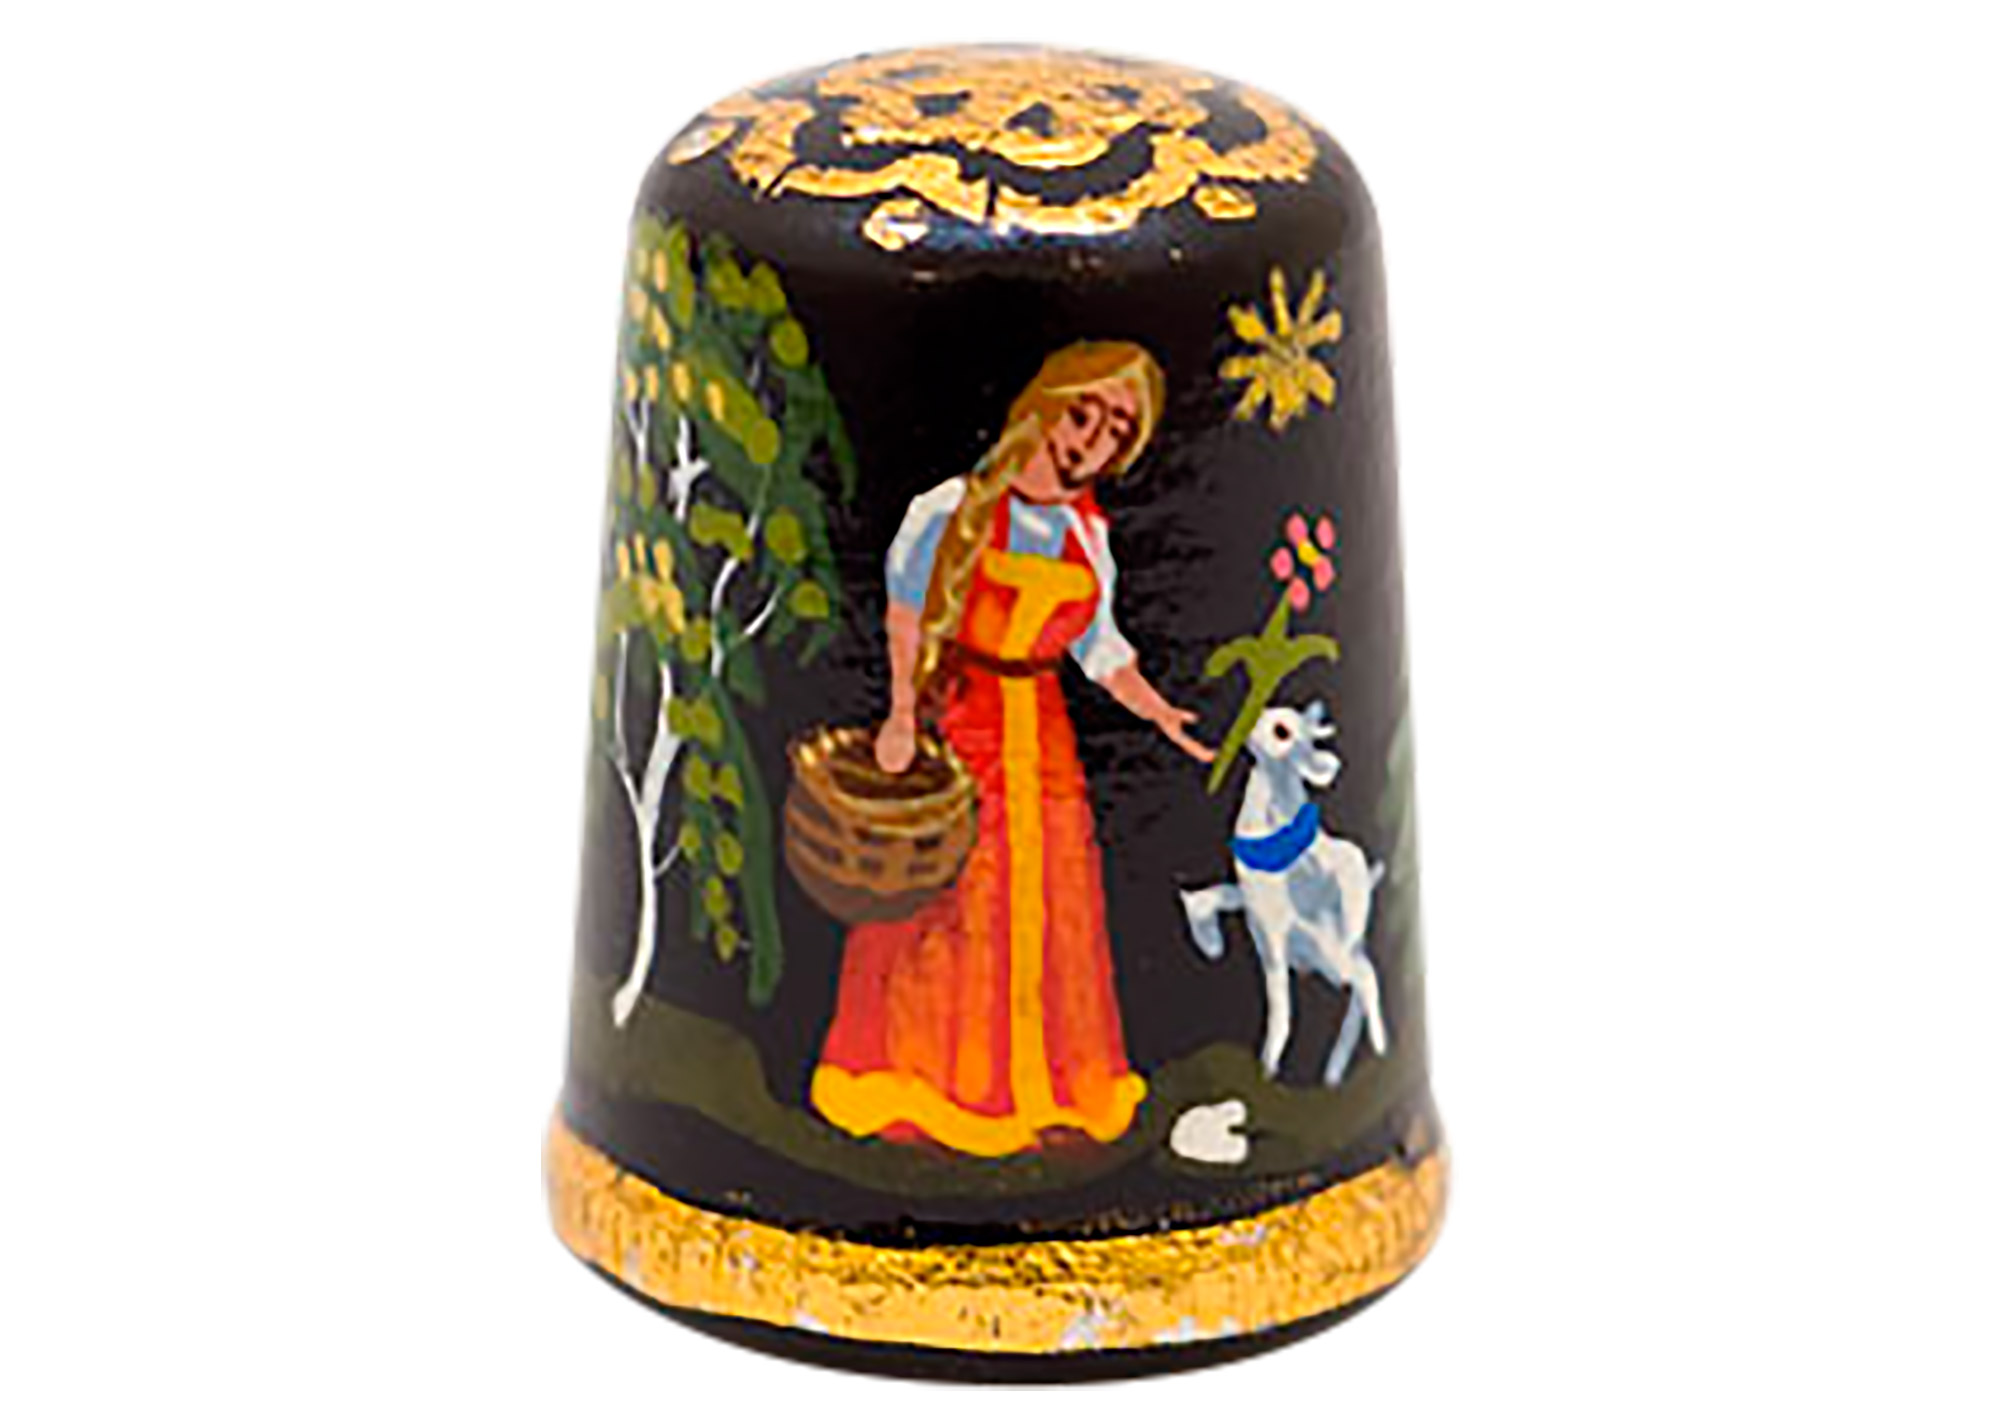 Buy Alyonushka Fairy Tale Thimble, Wood 1" at GoldenCockerel.com